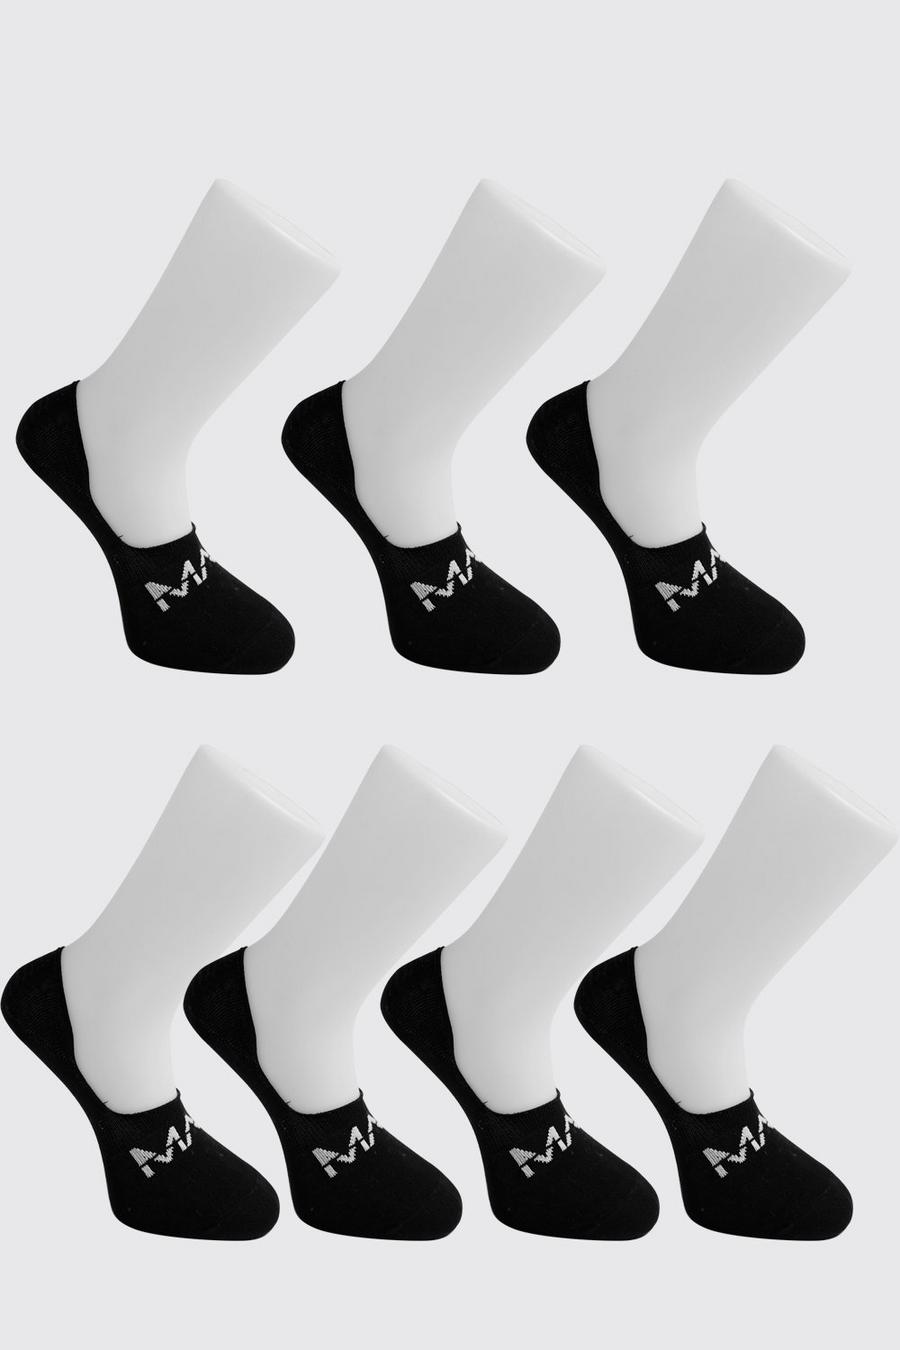 שחור nero מארז 7 זוגות גרביים בלתי נראים עם כיתוב MAN חצוי